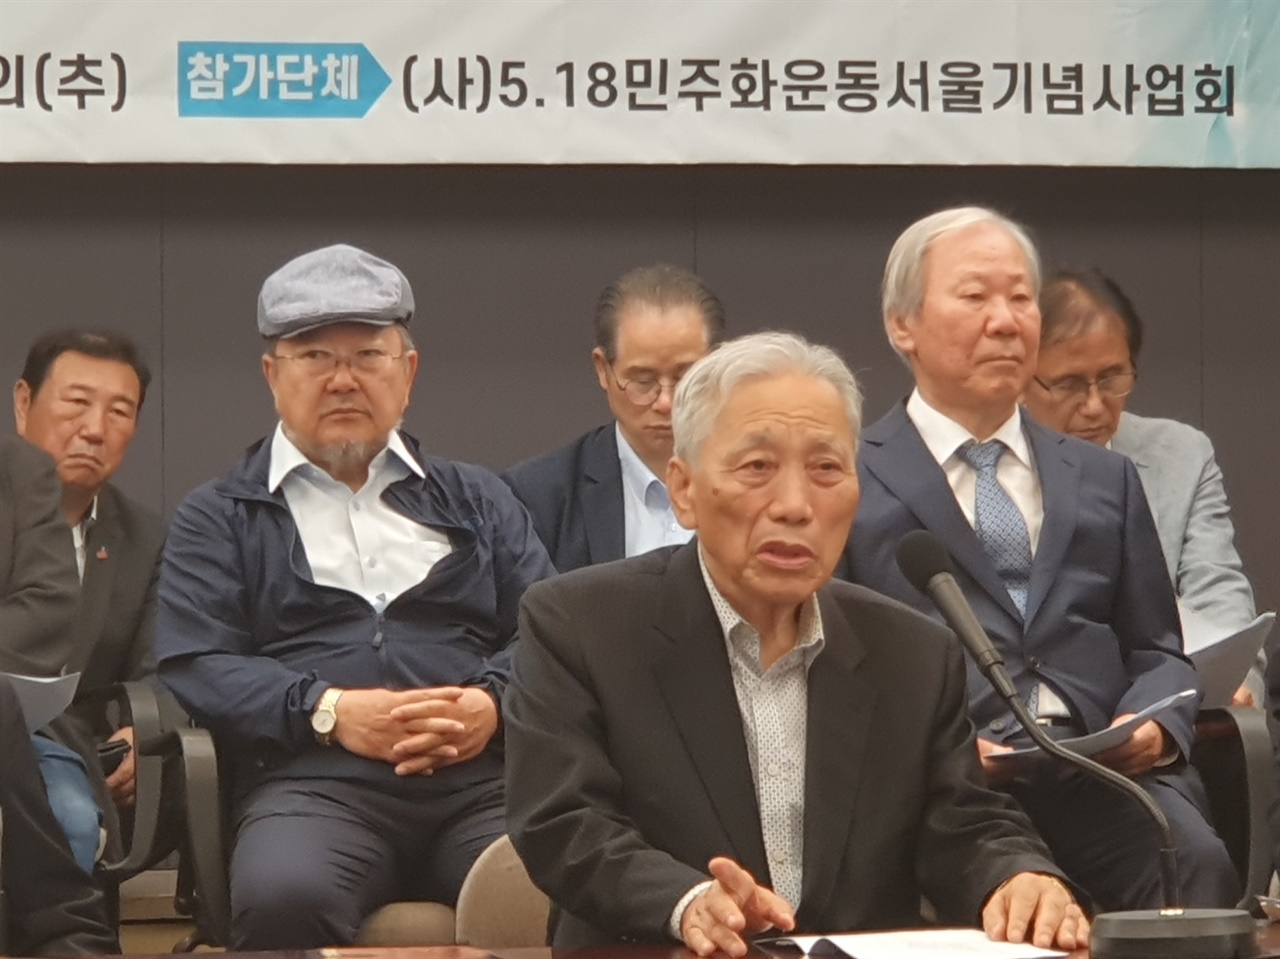 한국프레스센터에서 검찰독재·민생파탄·전쟁위기를 막기 위한 제43주년 5.18민중항쟁 기념행사가 열려 박석무 사업회 명예고문이 인사말을 하고 있다.